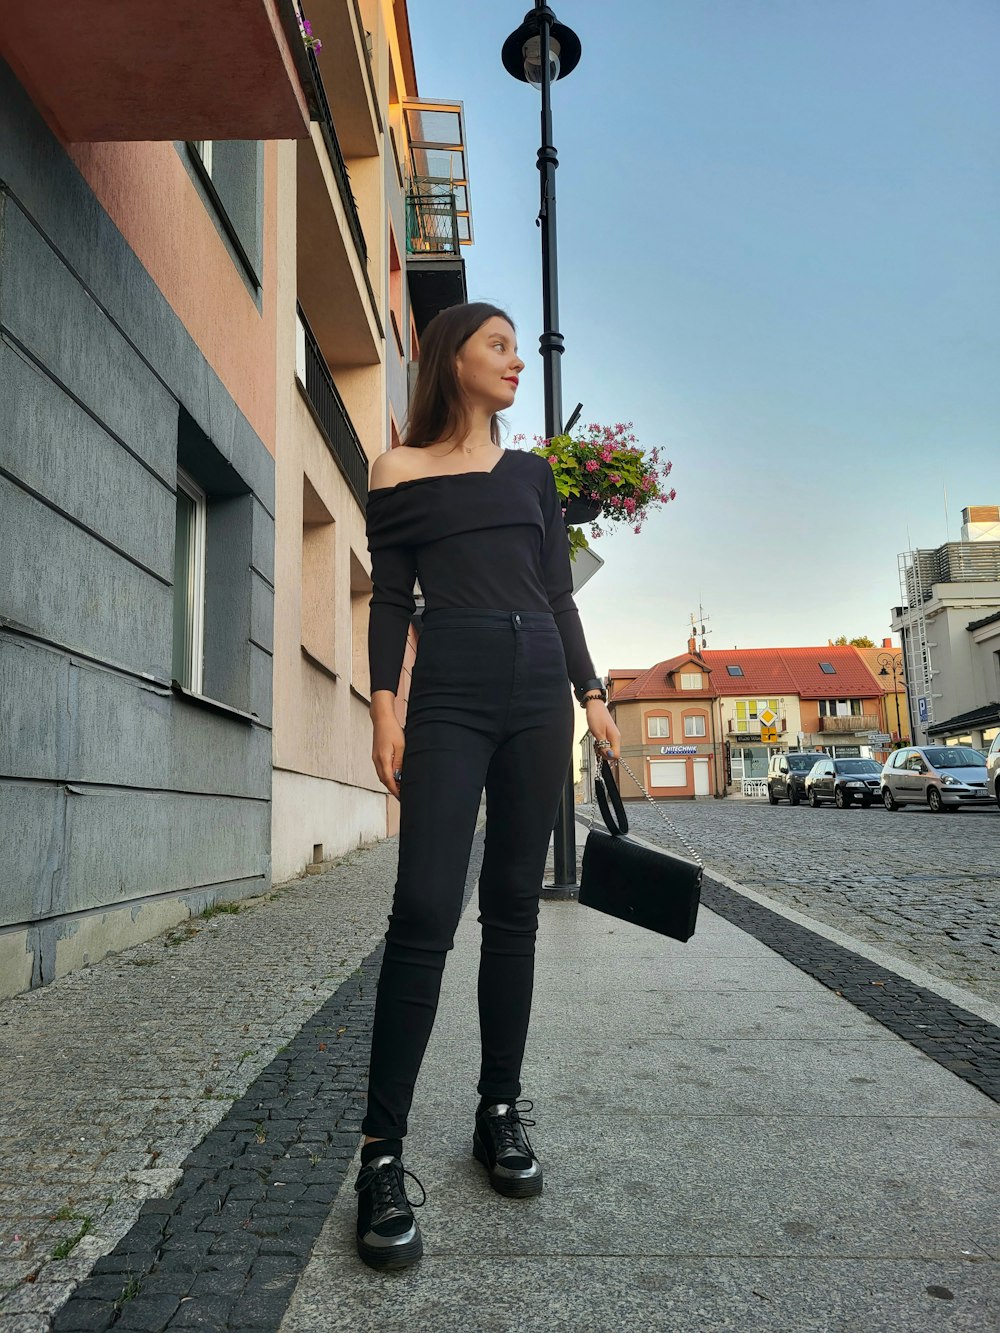 a woman in black is walking down the street